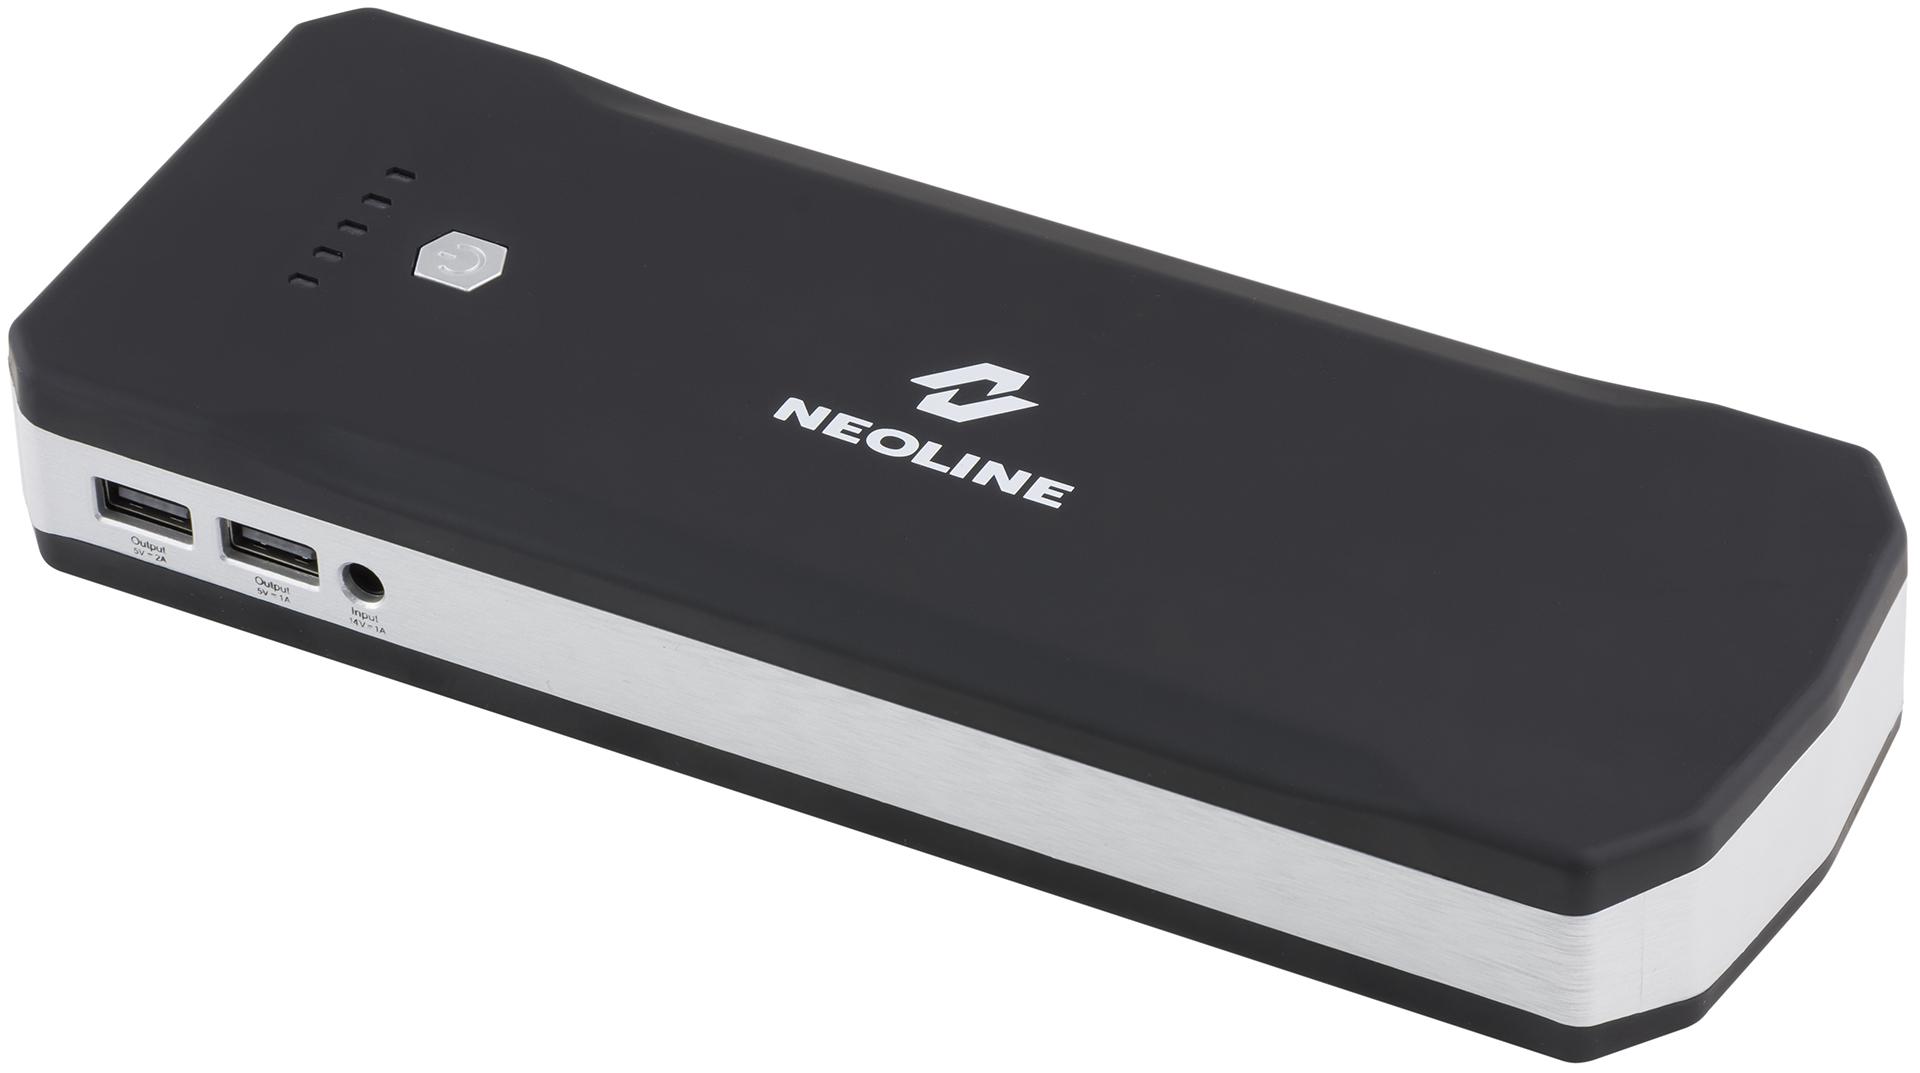 Как завести автомобиль, если аккумулятор сел: обзор портативного стартера Neoline Jump Starter 850A